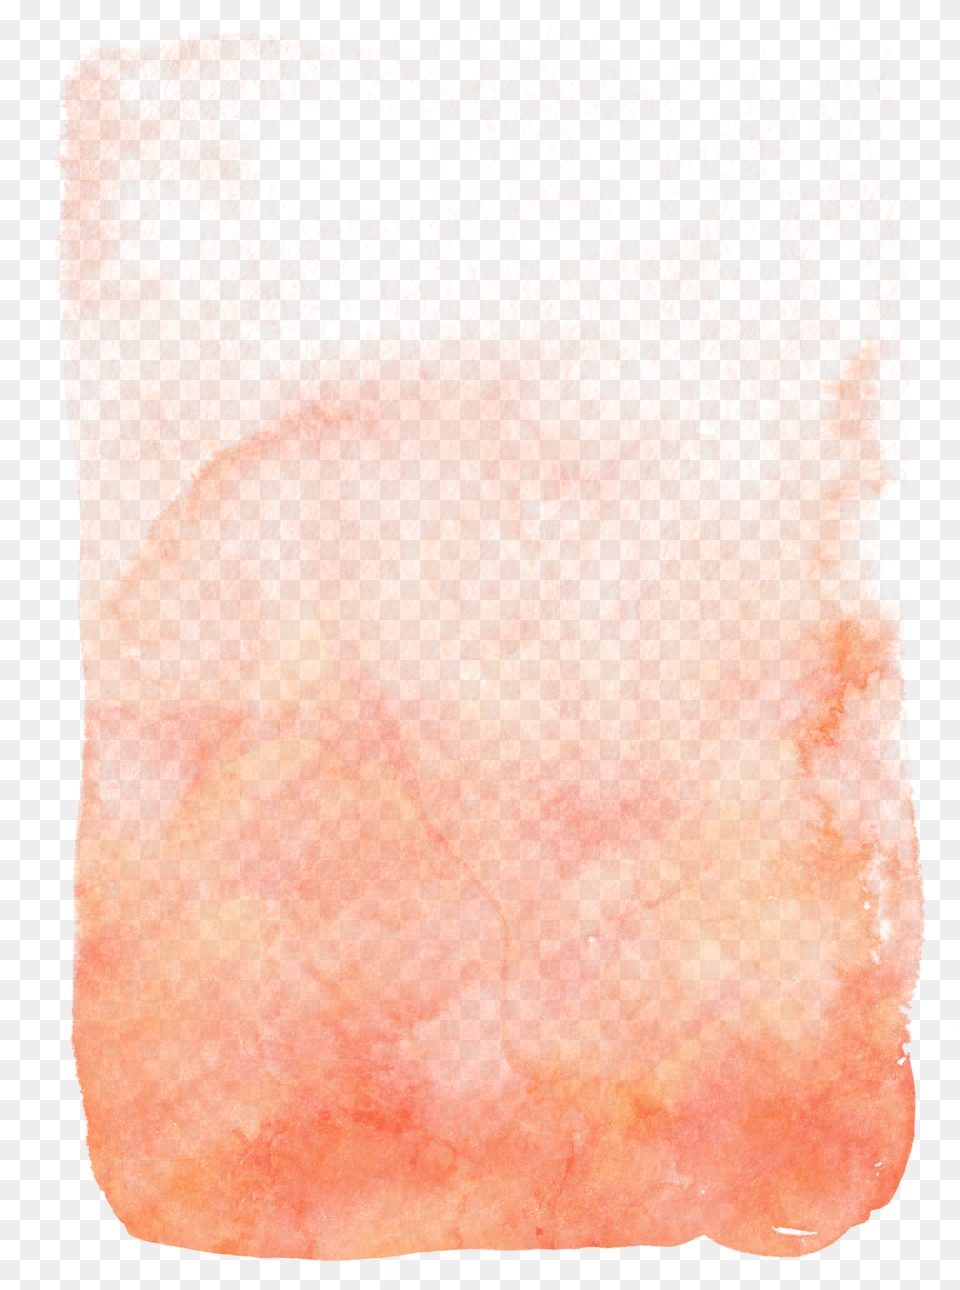 Coral Orange Watercolor Brush Stroke Watercolor Paint, Cross, Symbol, Blade, Razor Free Png